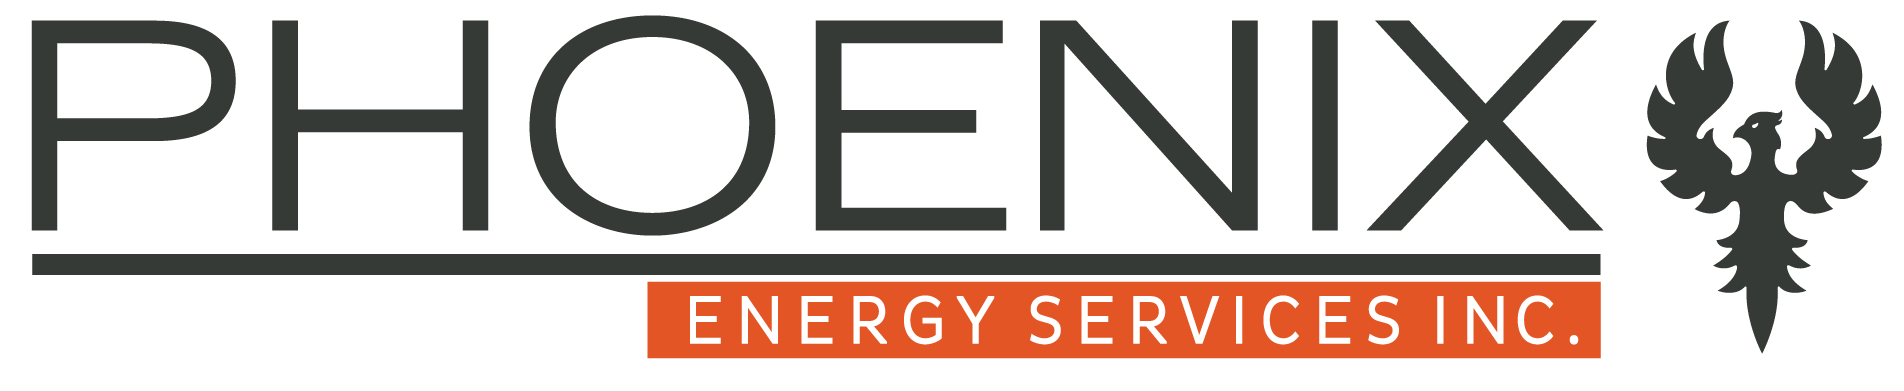 Phoenix Energy Services Inc.